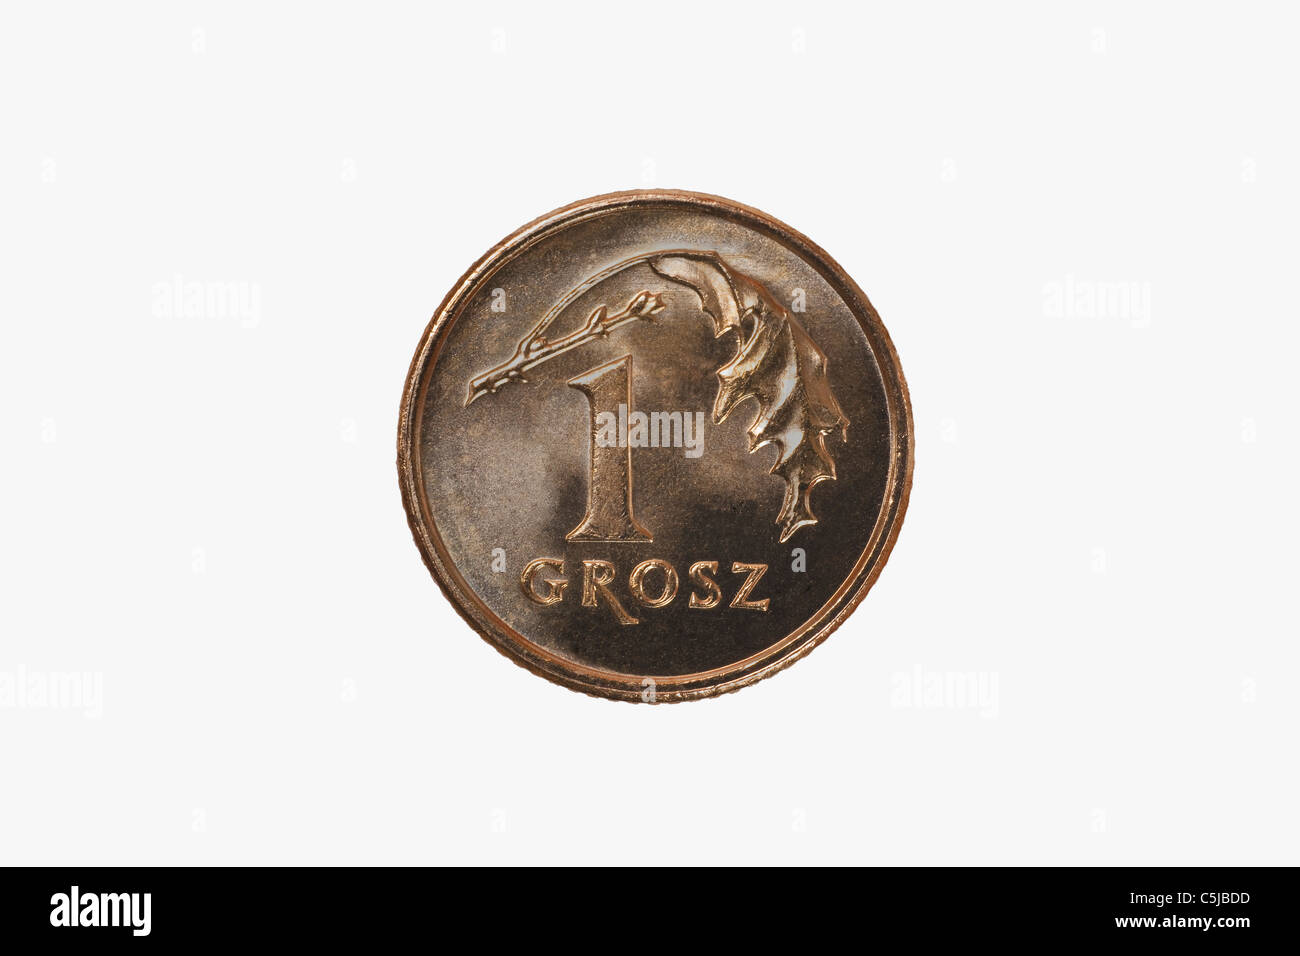 Detailansicht der polnischen Münze 1 paquet de Grosz | photo de détail la plus petite pièce de monnaie polonaise, 1 Grosz Banque D'Images